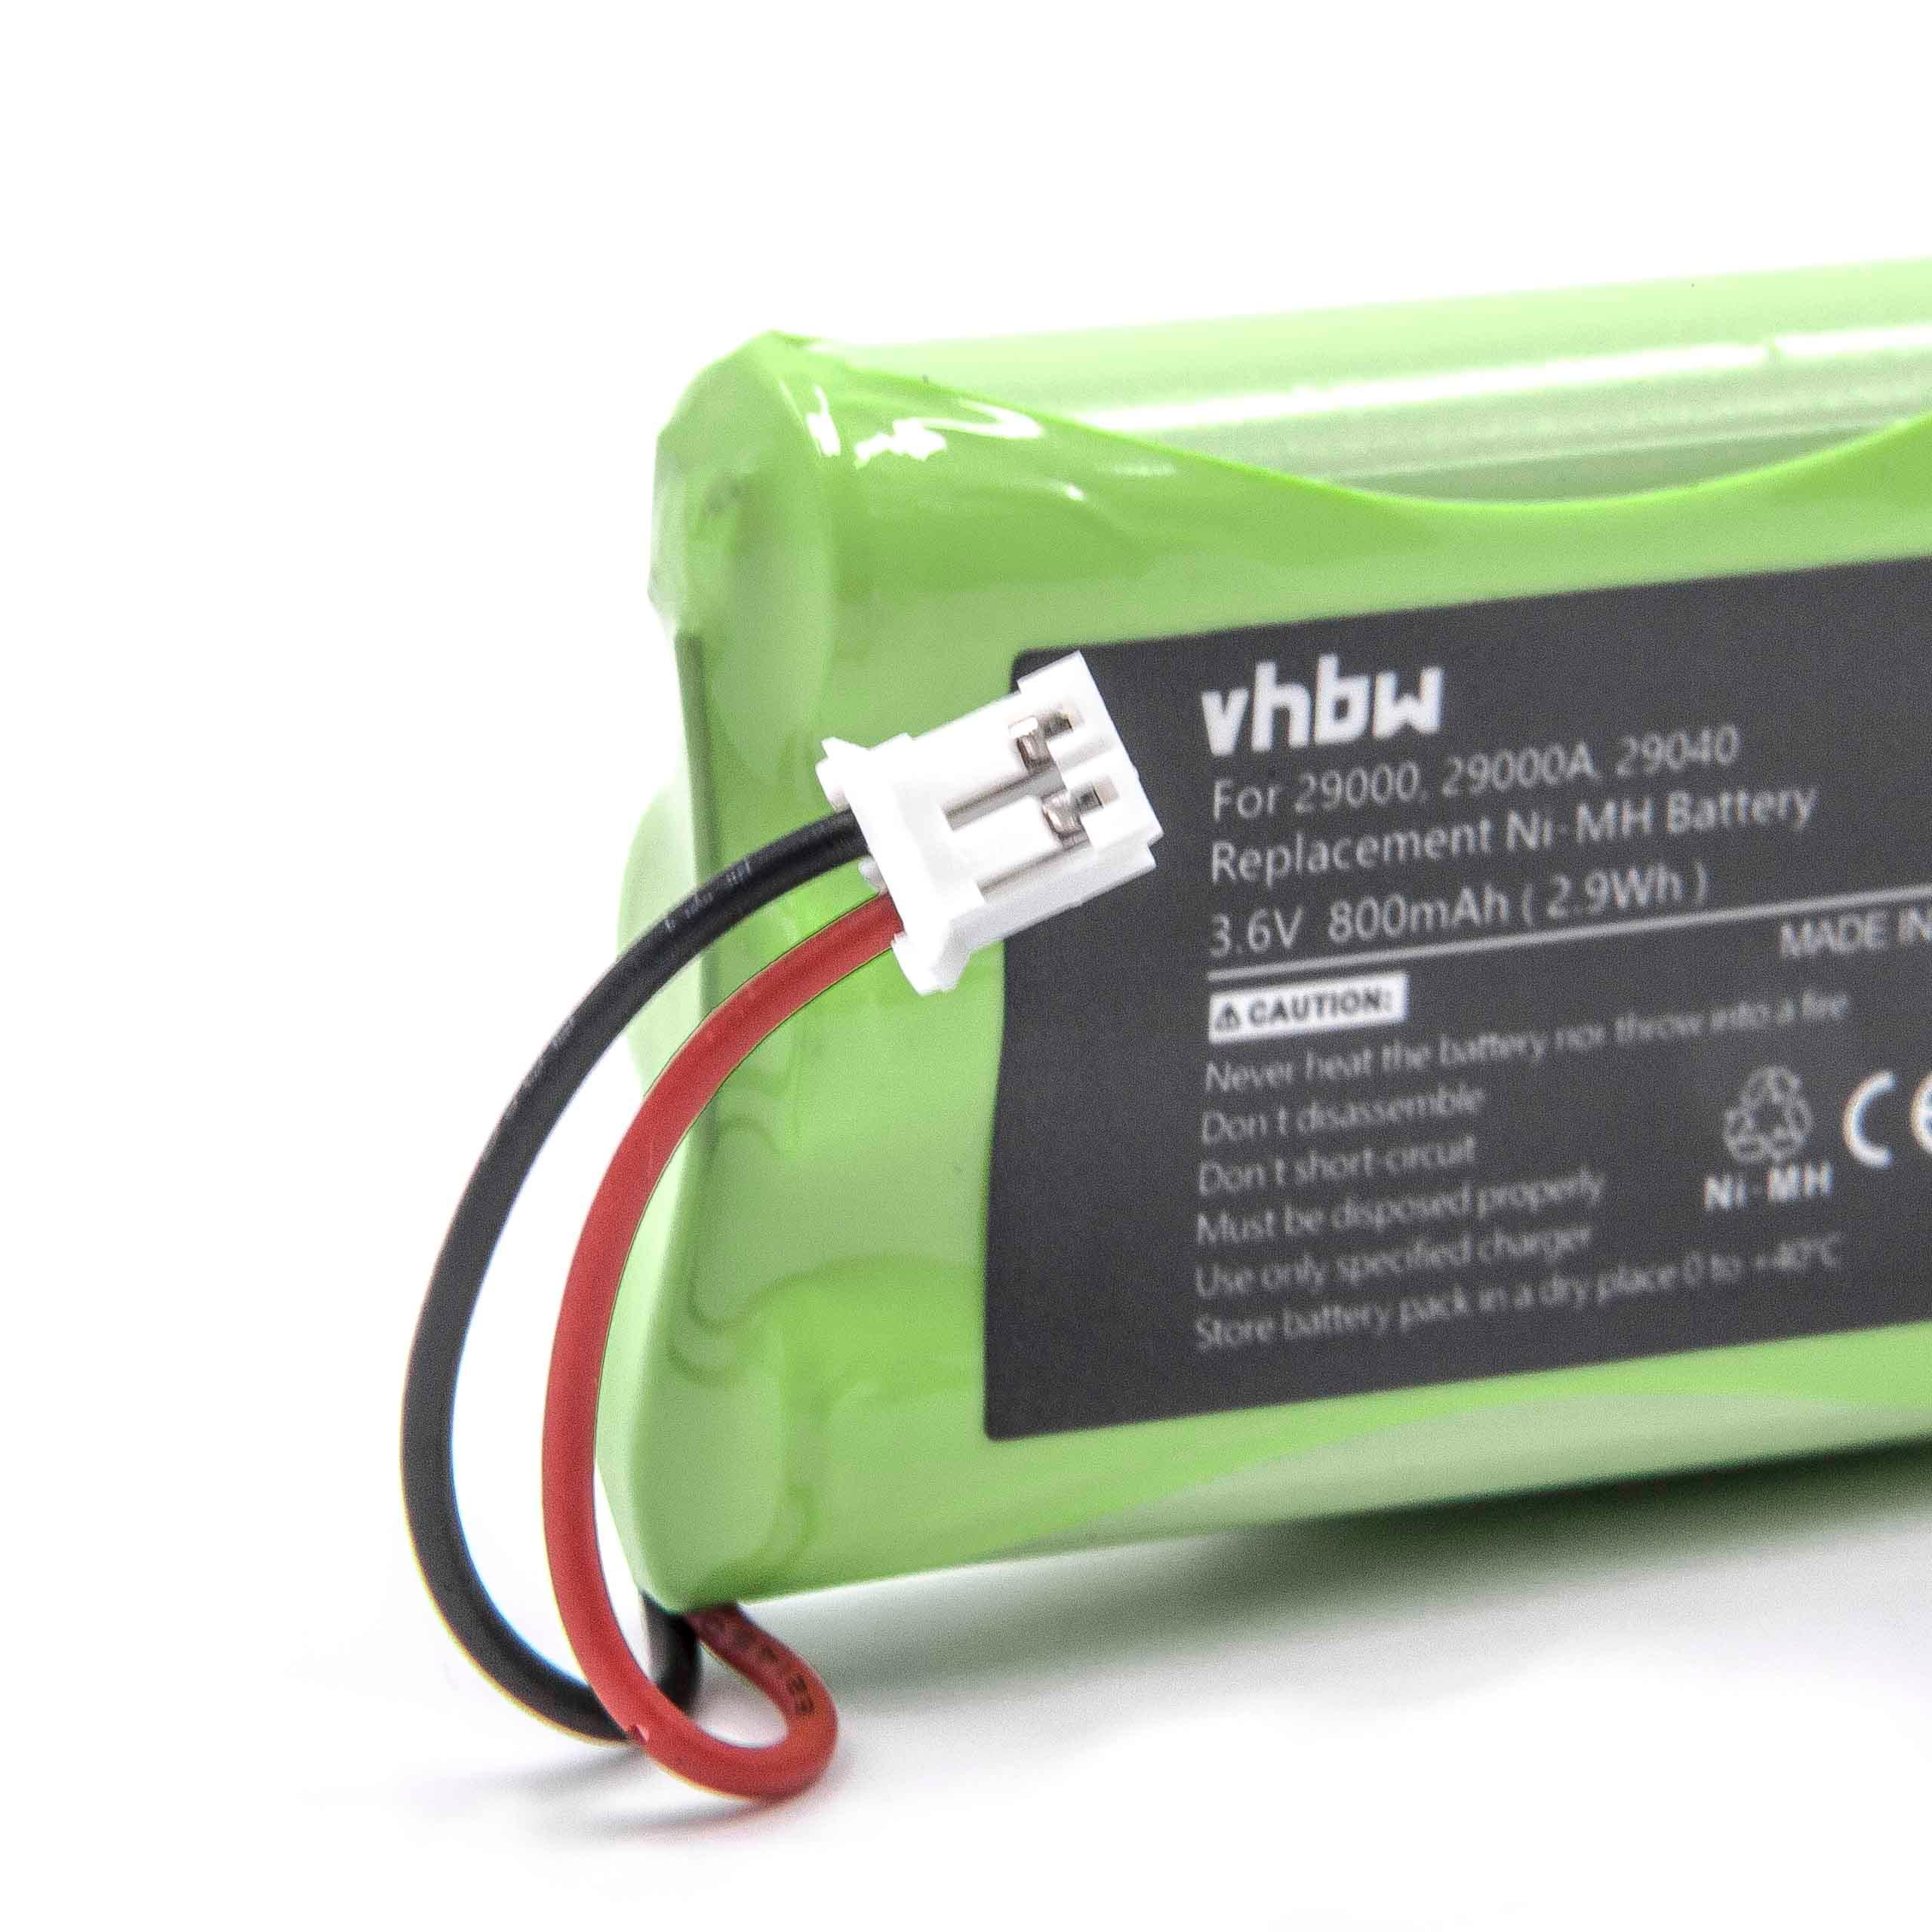 Batterie remplace Summer Infant 29030-10, 29030 pour moniteur bébé - 800mAh 3,6V NiMH